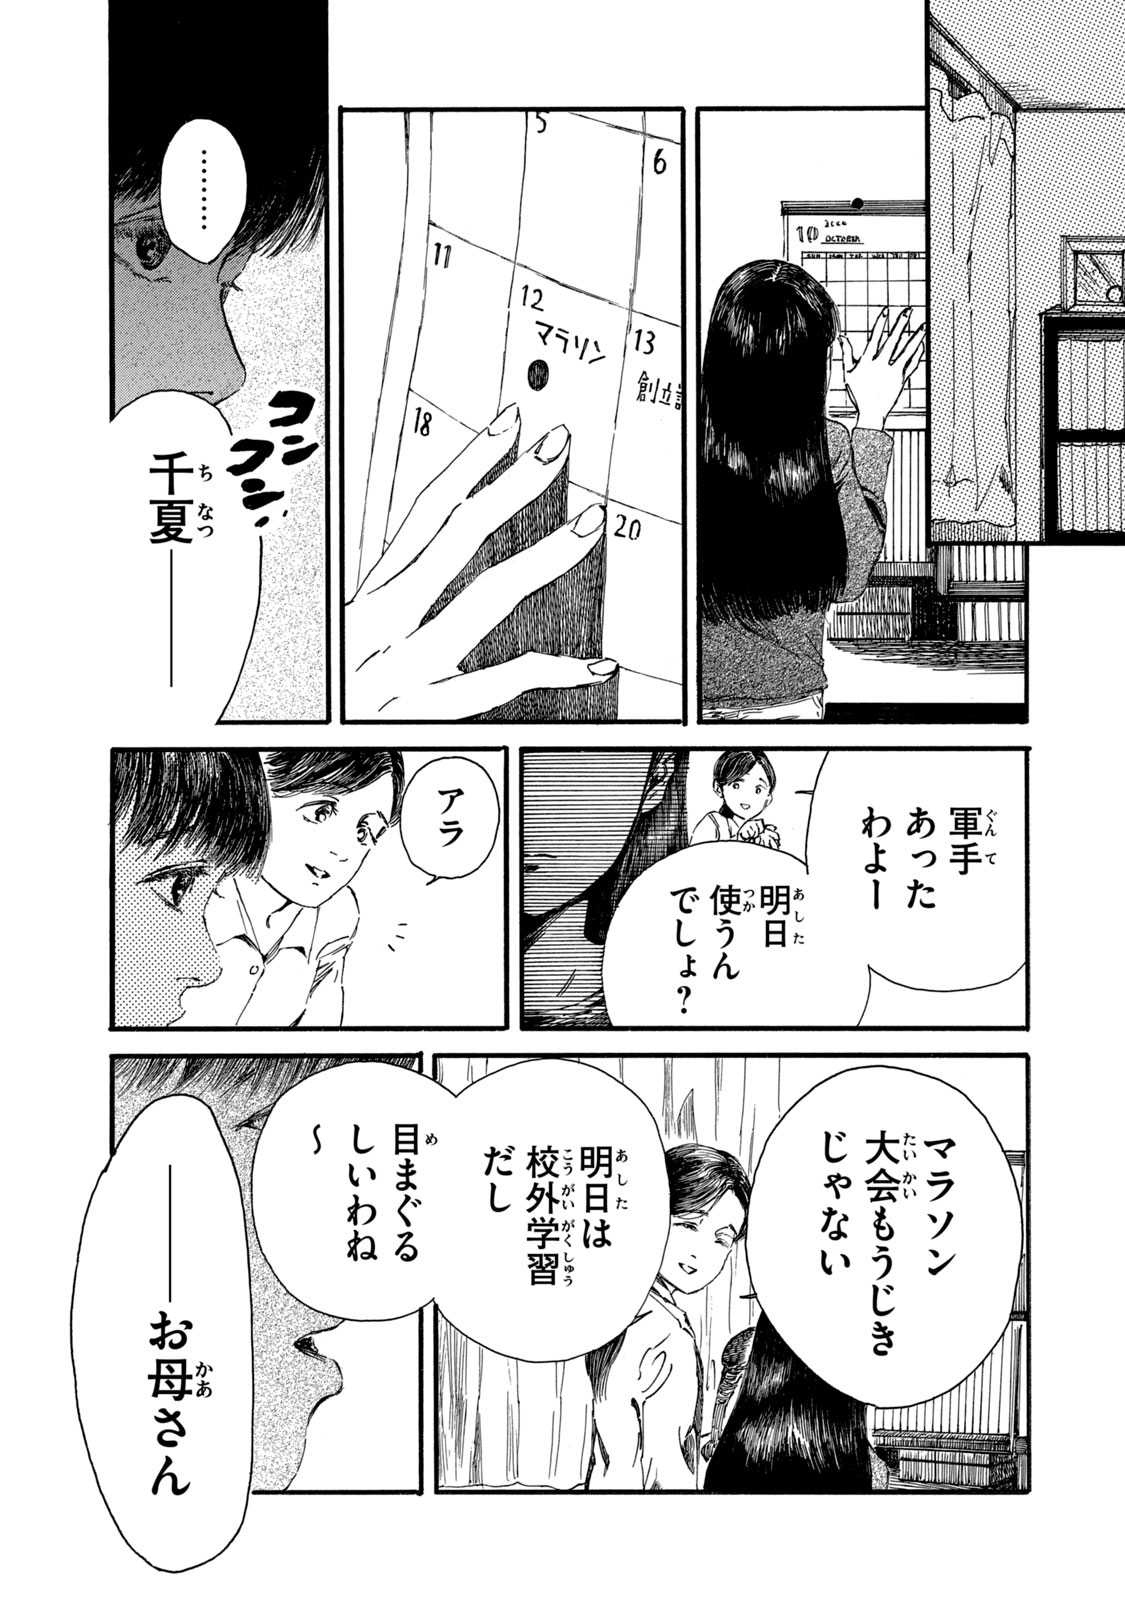 Watashi no Hara no Naka no Bakemono - Chapter 15 - Page 1